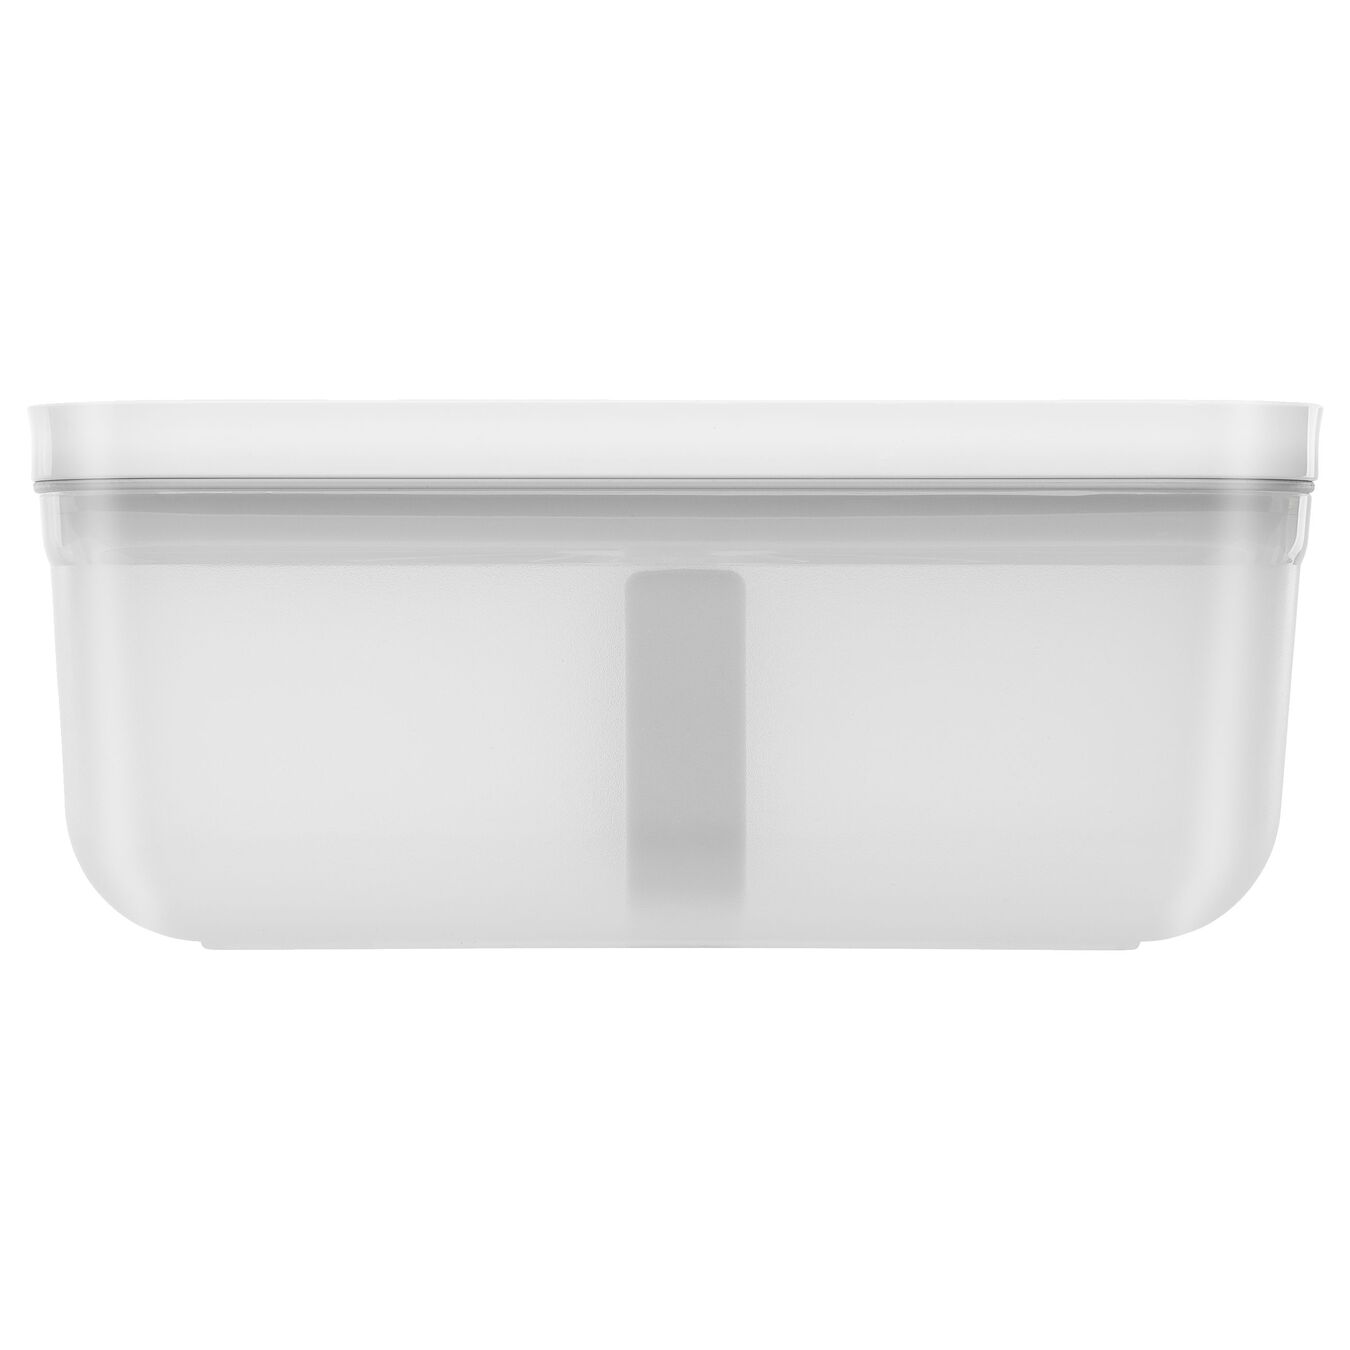 Lunch box sottovuoto L, plastica, semi trasparente-grigio,,large 3